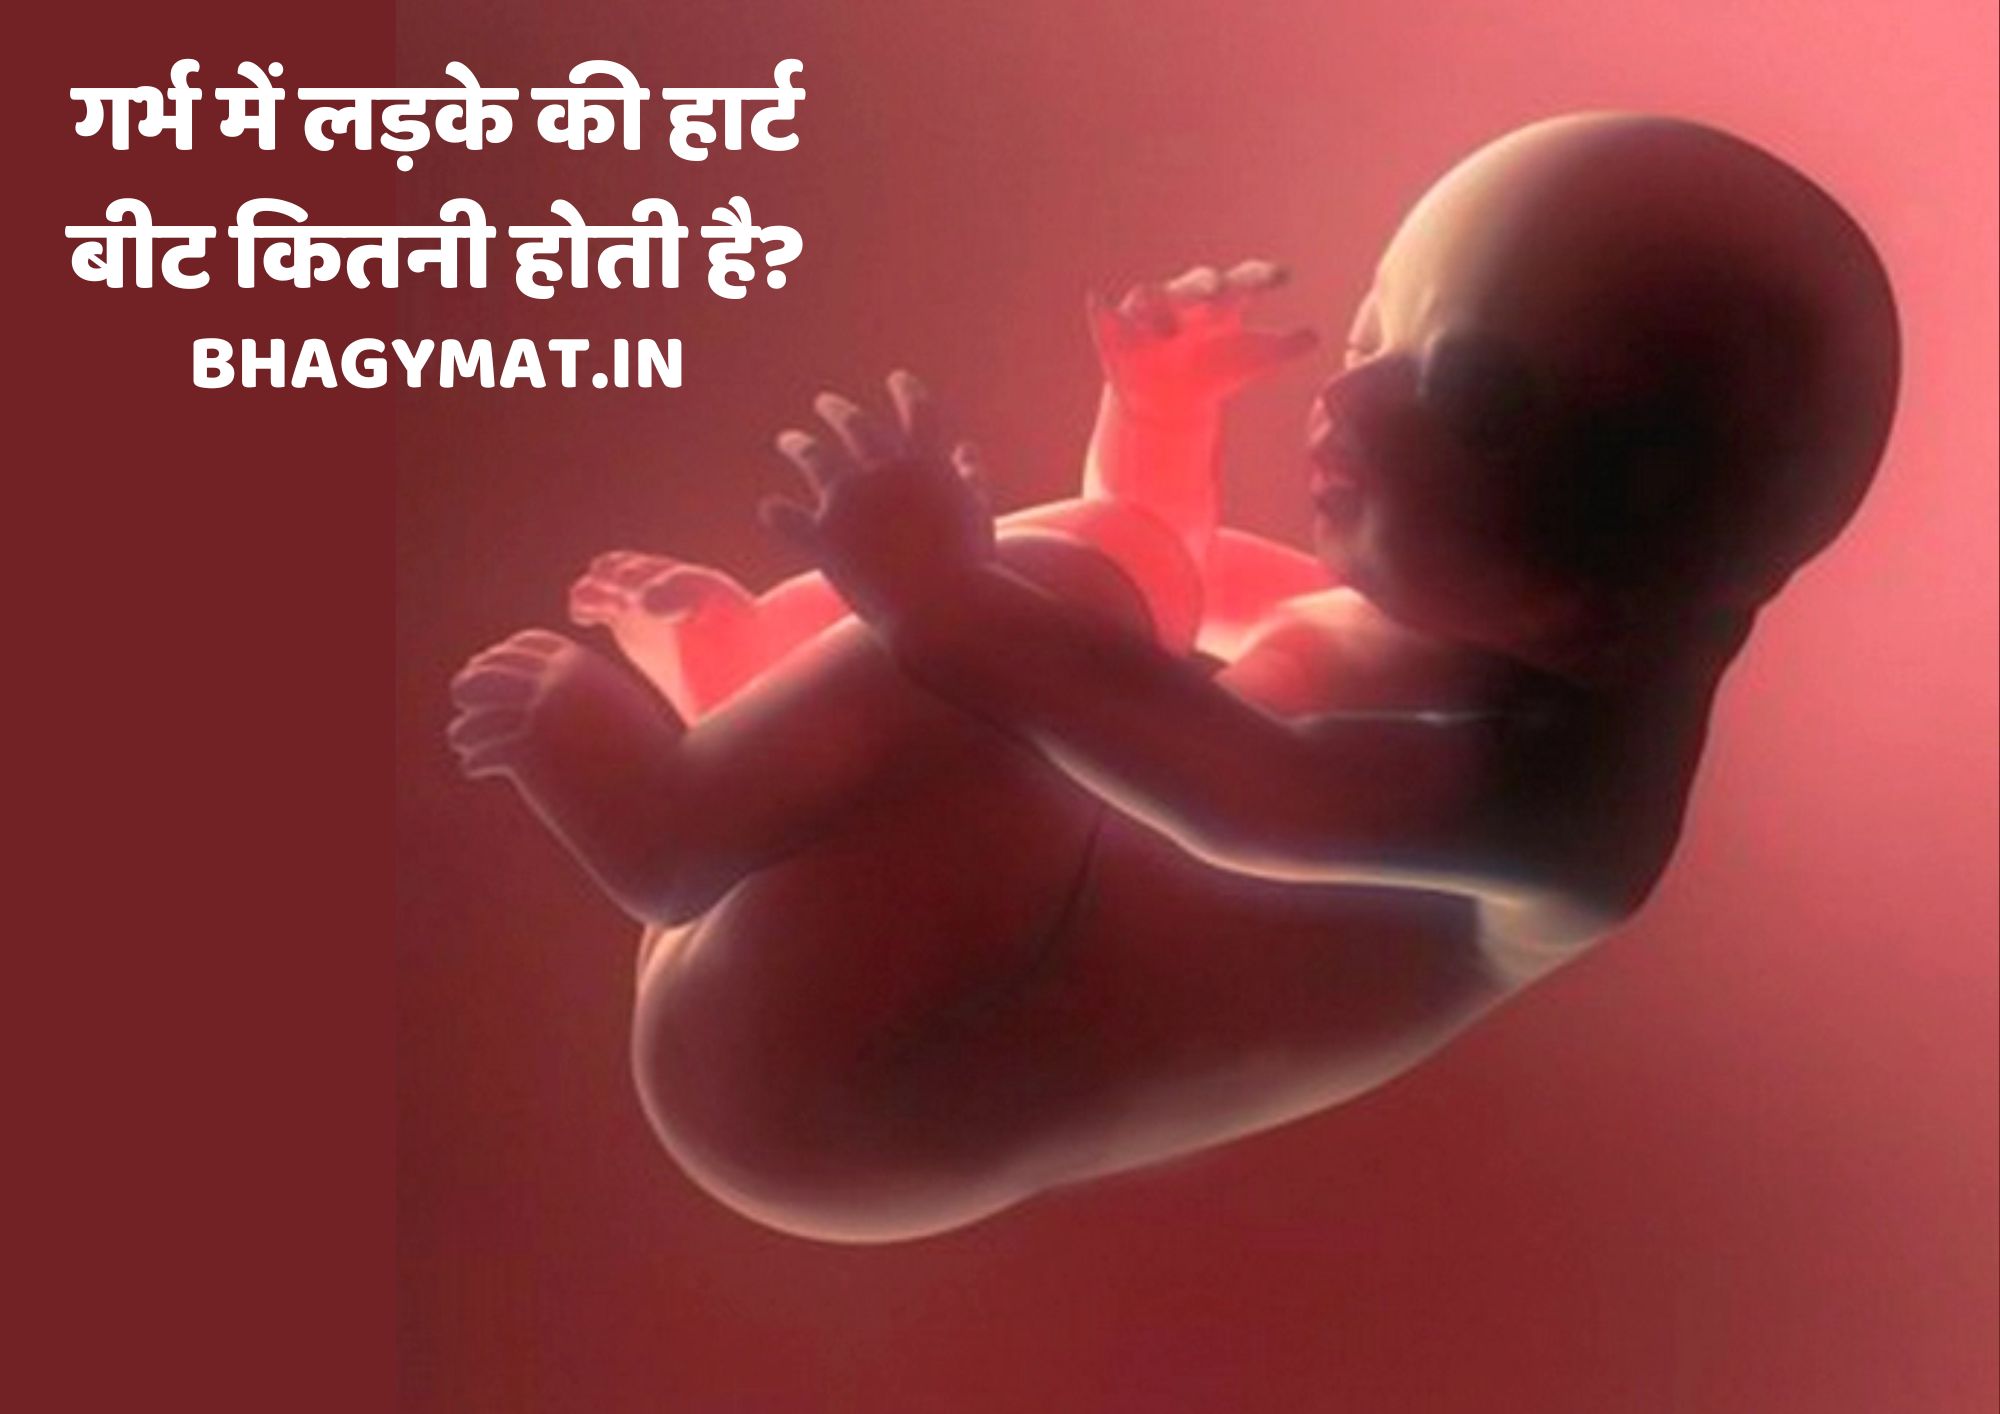 गर्भ में लड़के की हार्ट बीट कितनी होती है, गर्भ में लड़के की धड़कन कितनी होती है इन हिंदी?